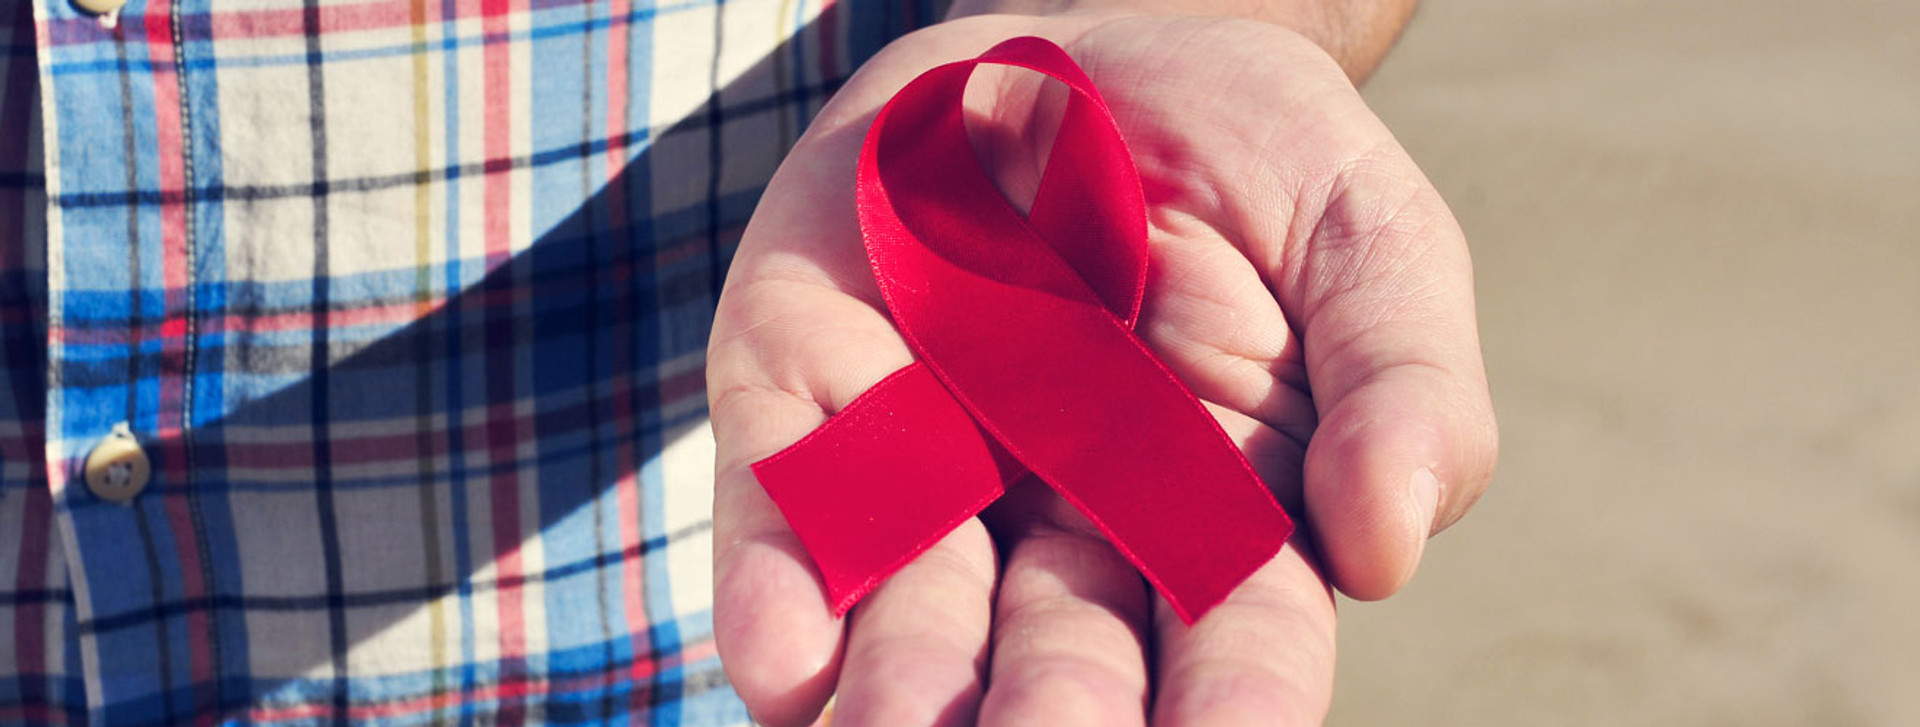 Лікування ВІЛ і жодних вироків